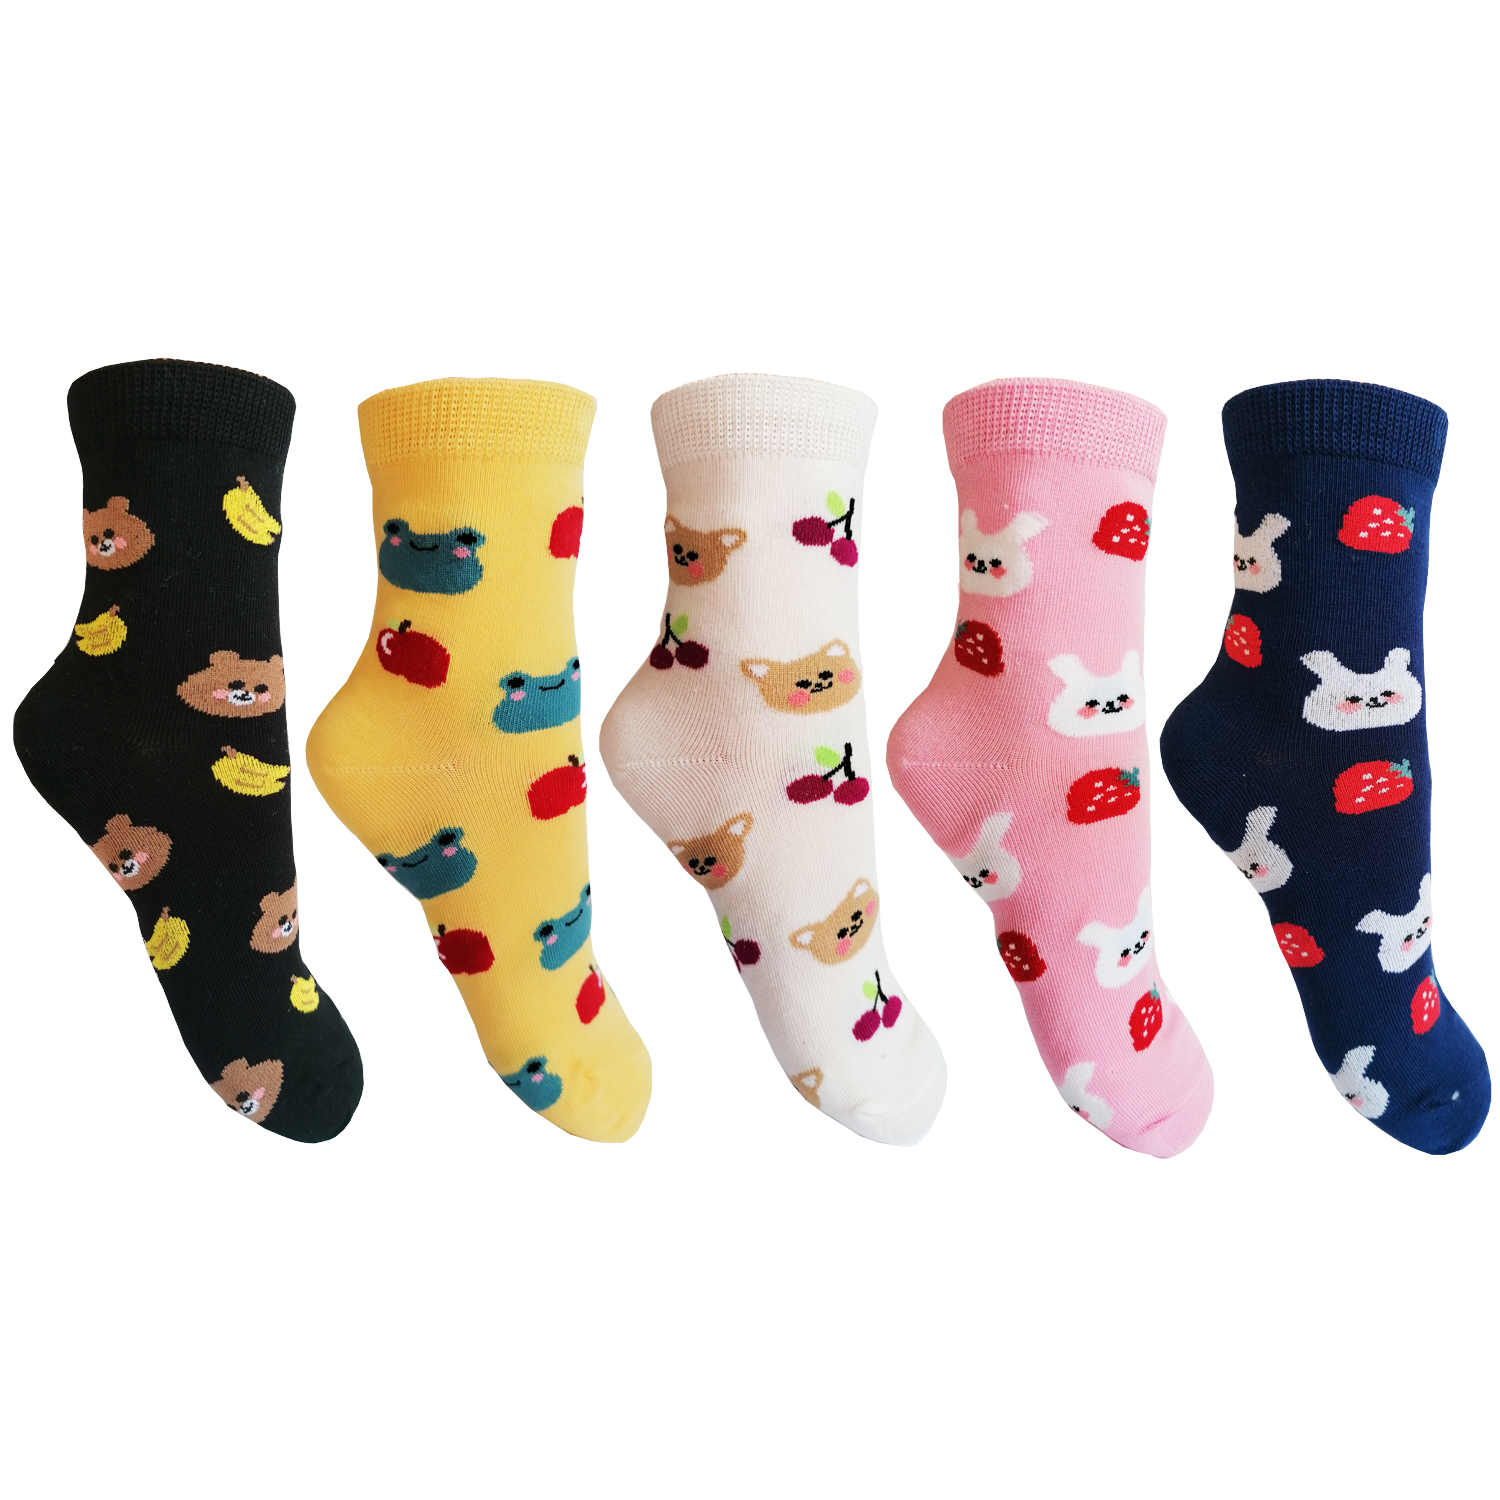 Dívčí ponožky Aura.Via - GNZ7989, mix barev Barva: Mix barev, Velikost: 28-31